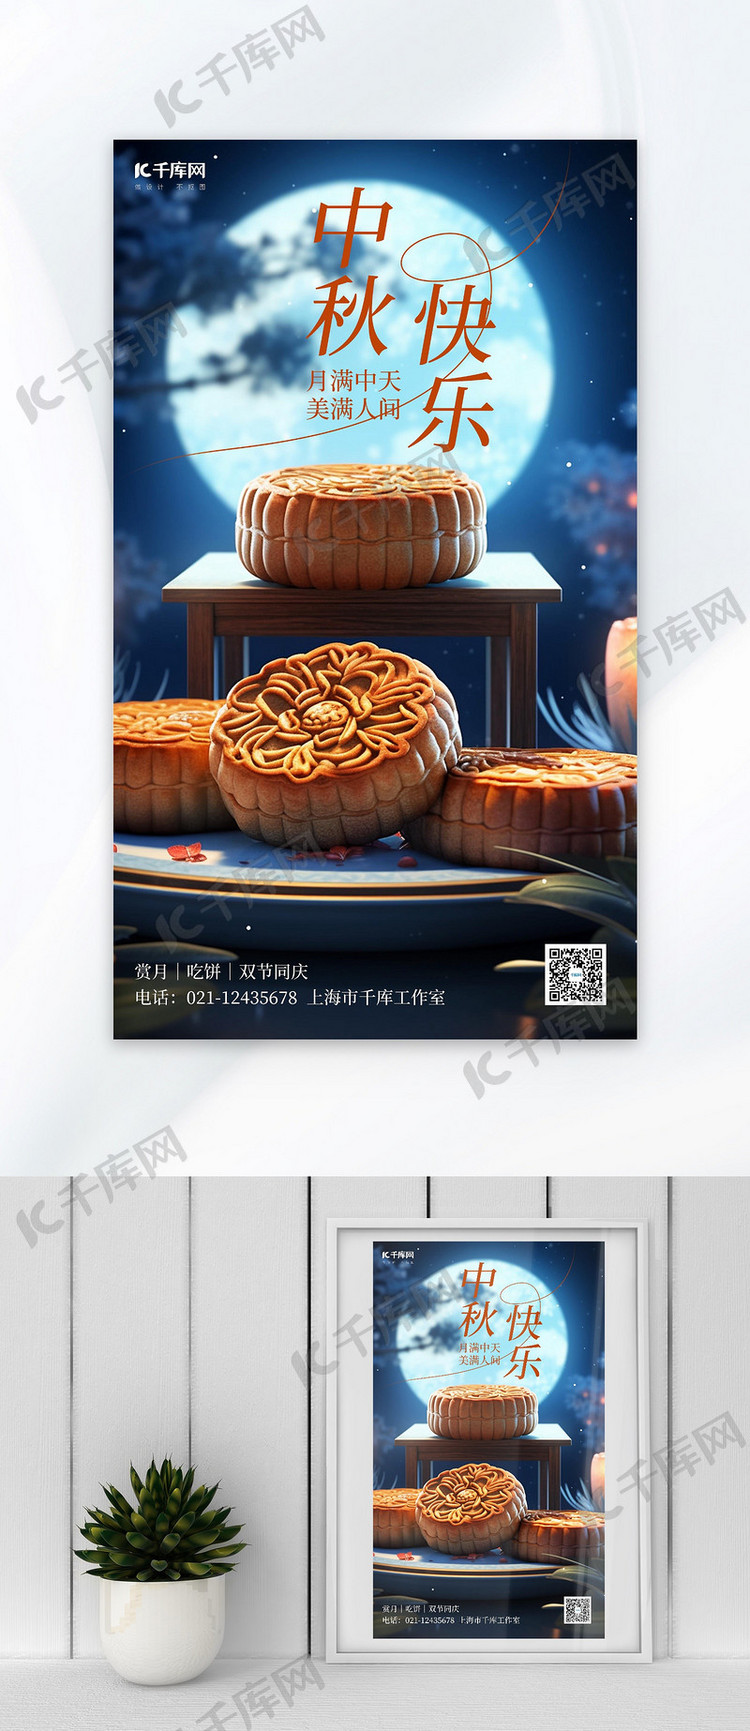 中秋快乐月饼蓝色AI插画广告宣传AI海报